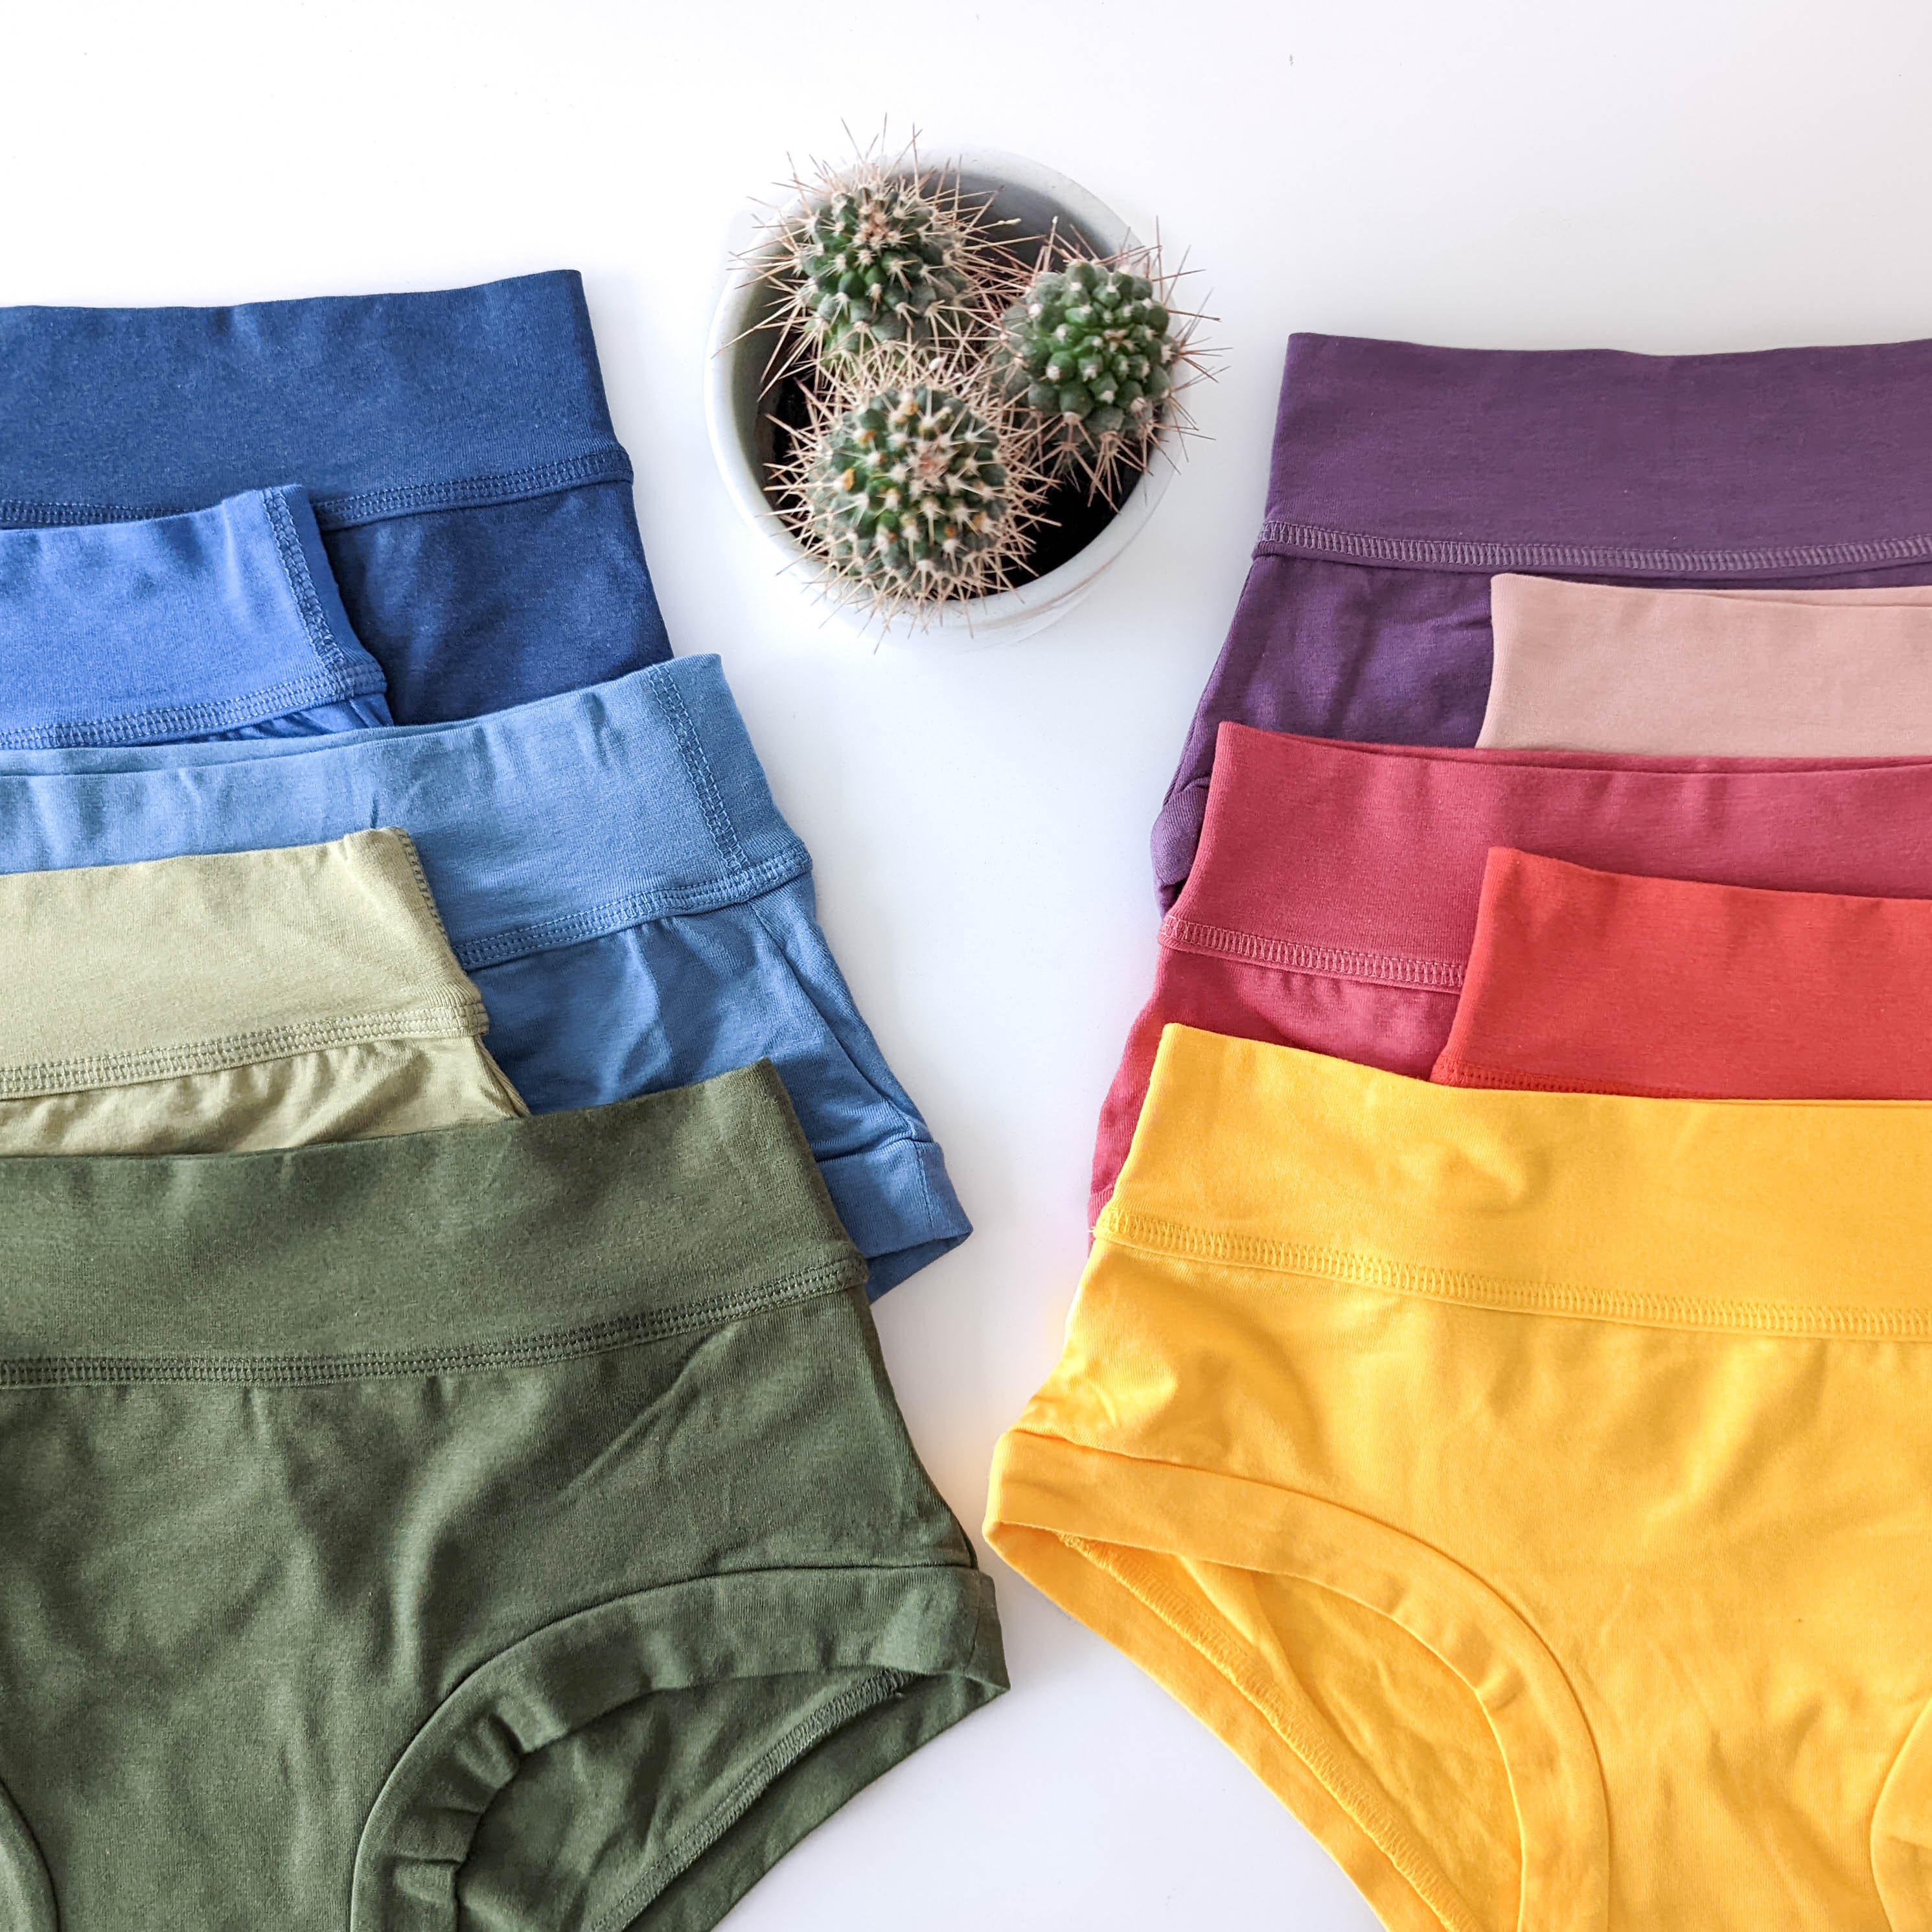 Buy Bamboo Underwear Women Online In India -  India